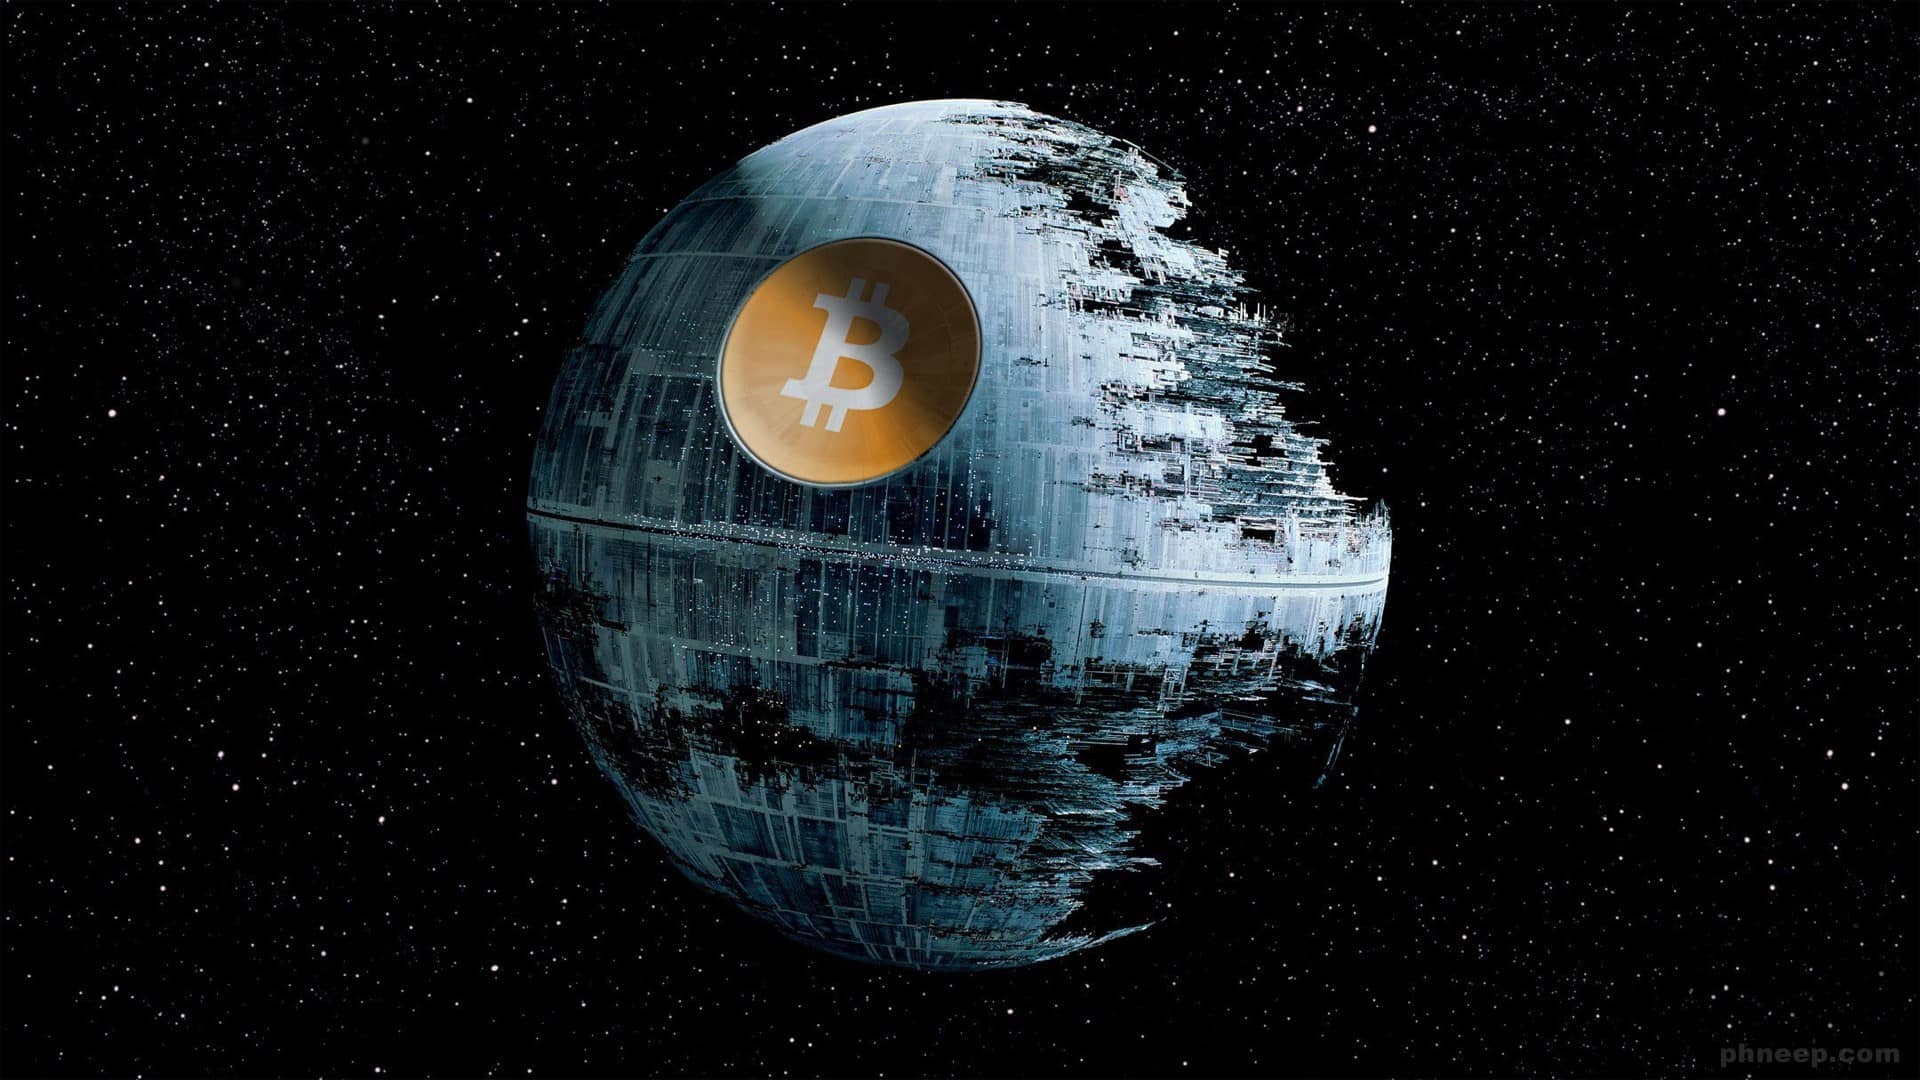 Star wars plus Bitcoin.